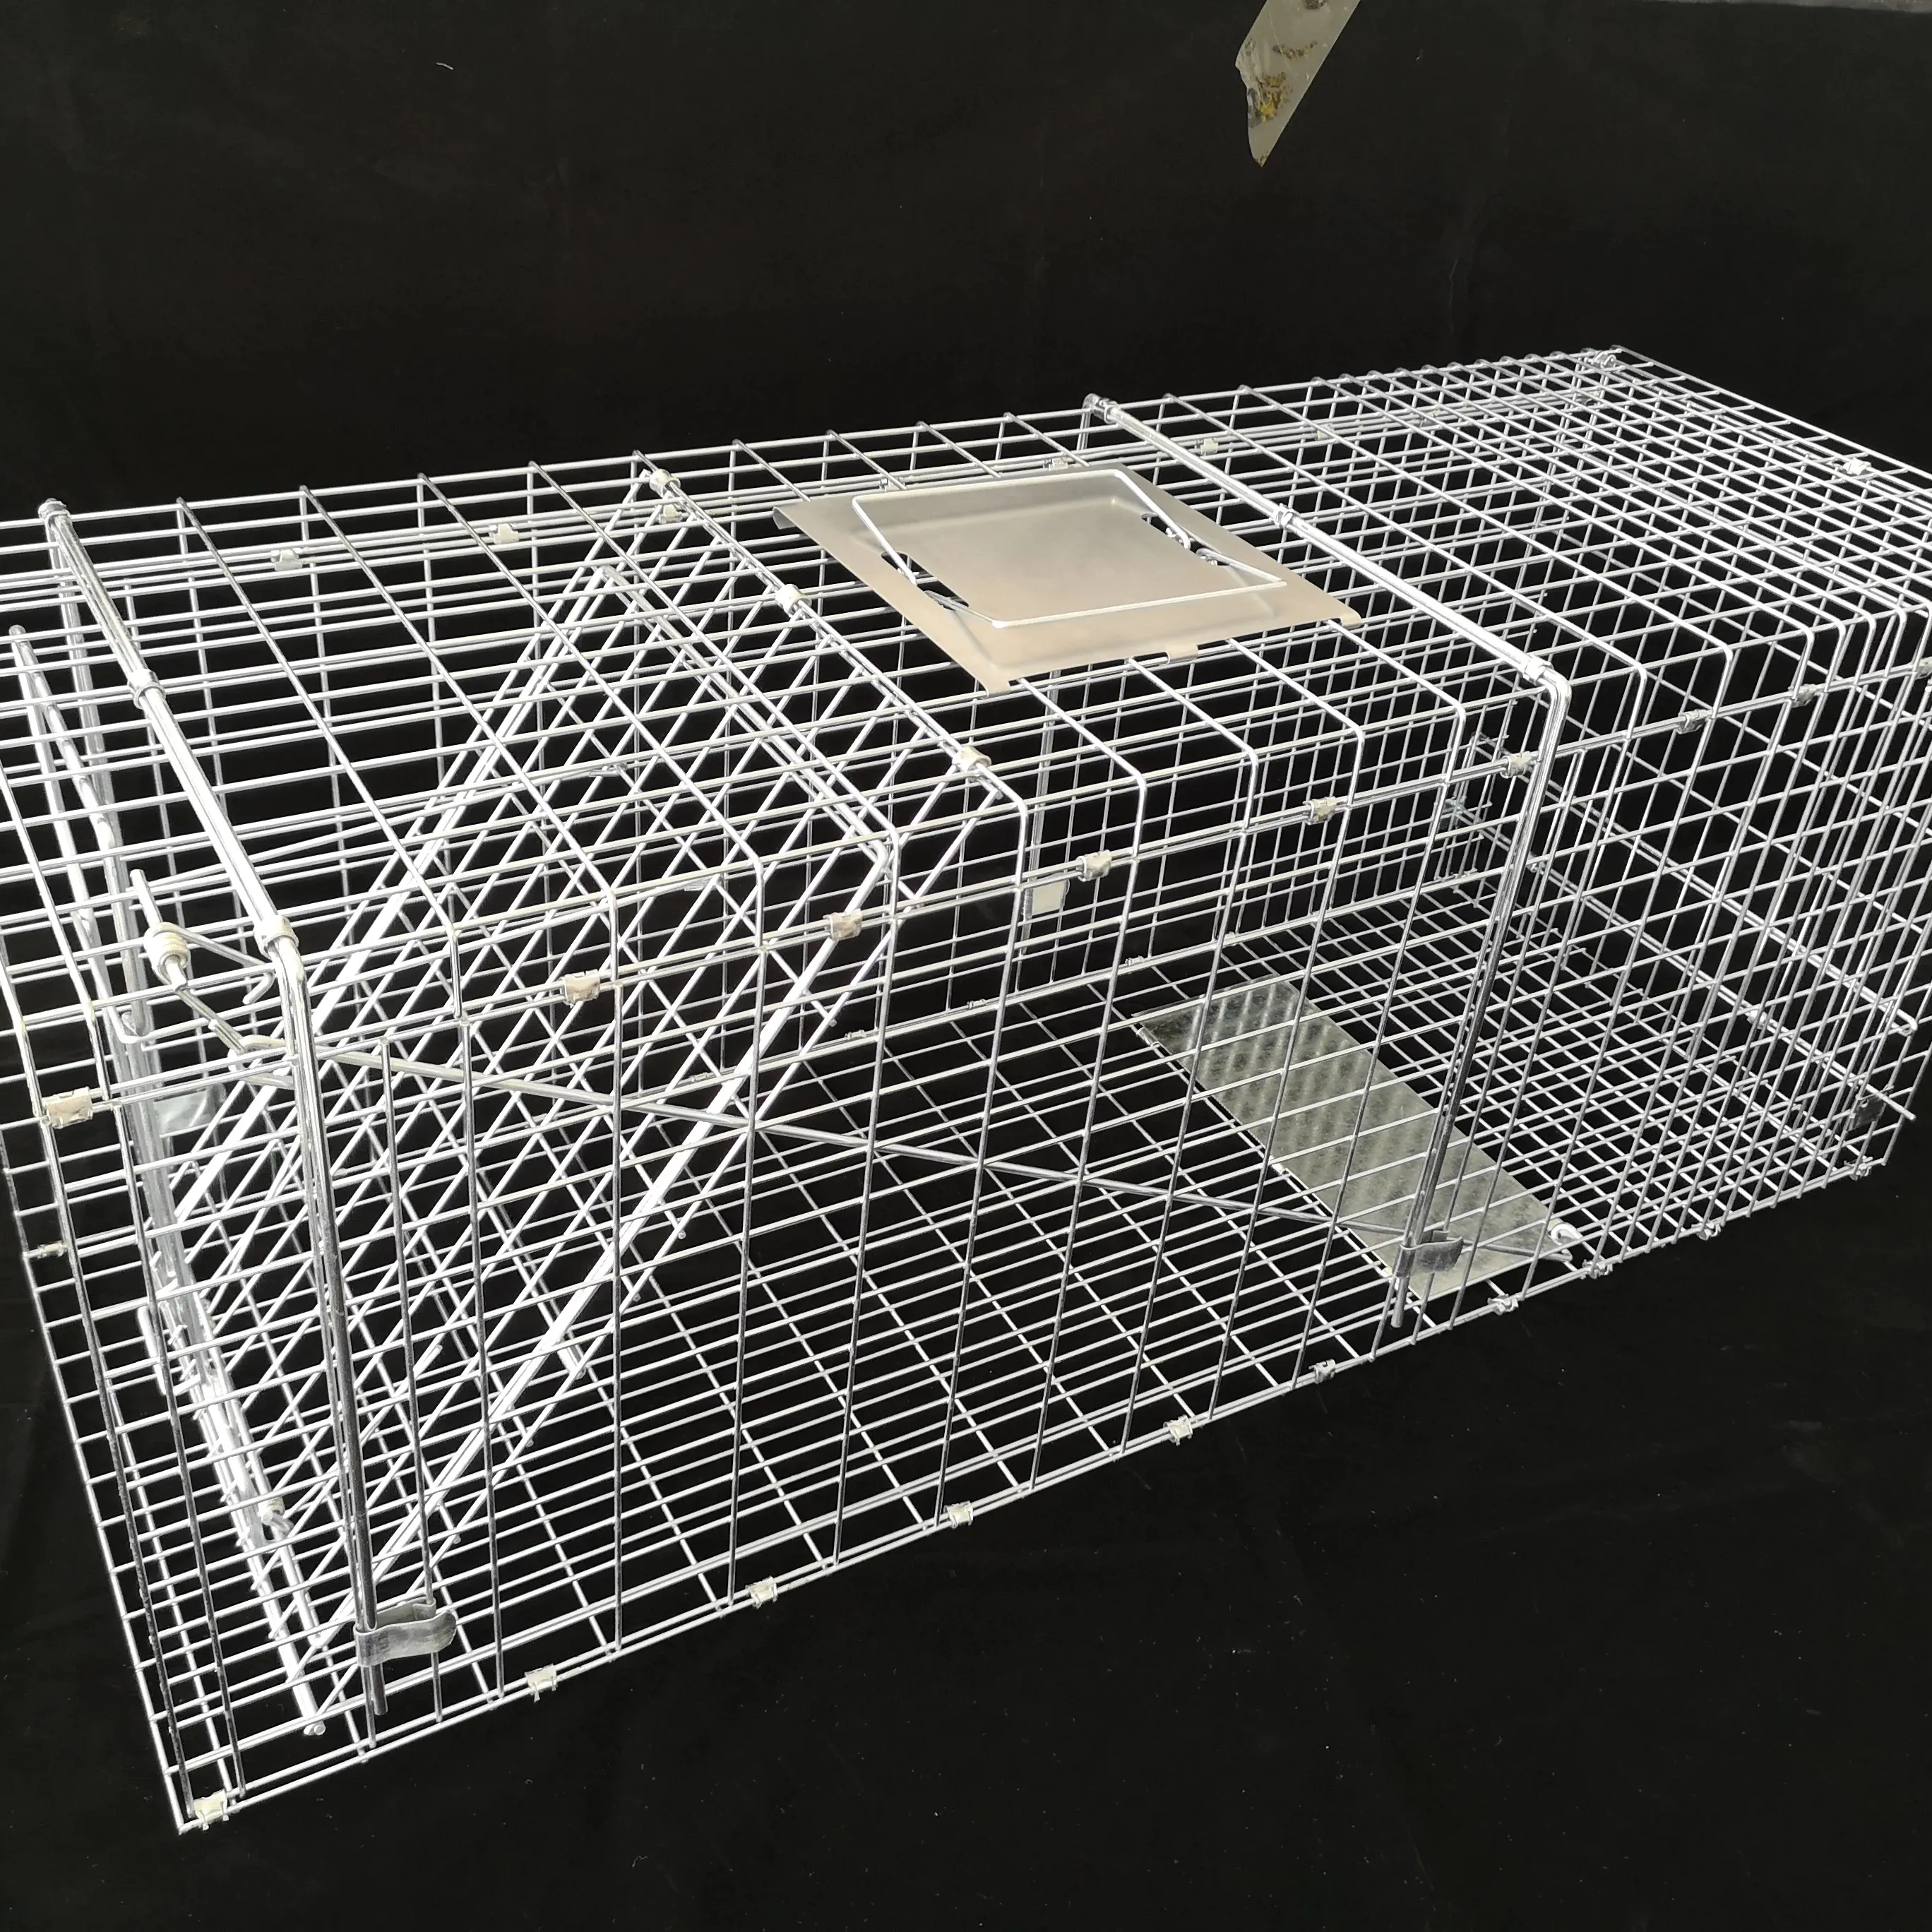 Lebende Kaninchen, Katze, Eichhörnchen, Waschbär, Maulwurf, Gopher, Ground hogs, Opossums Catch and Release Cage Humane Metal Animal Cage Trap